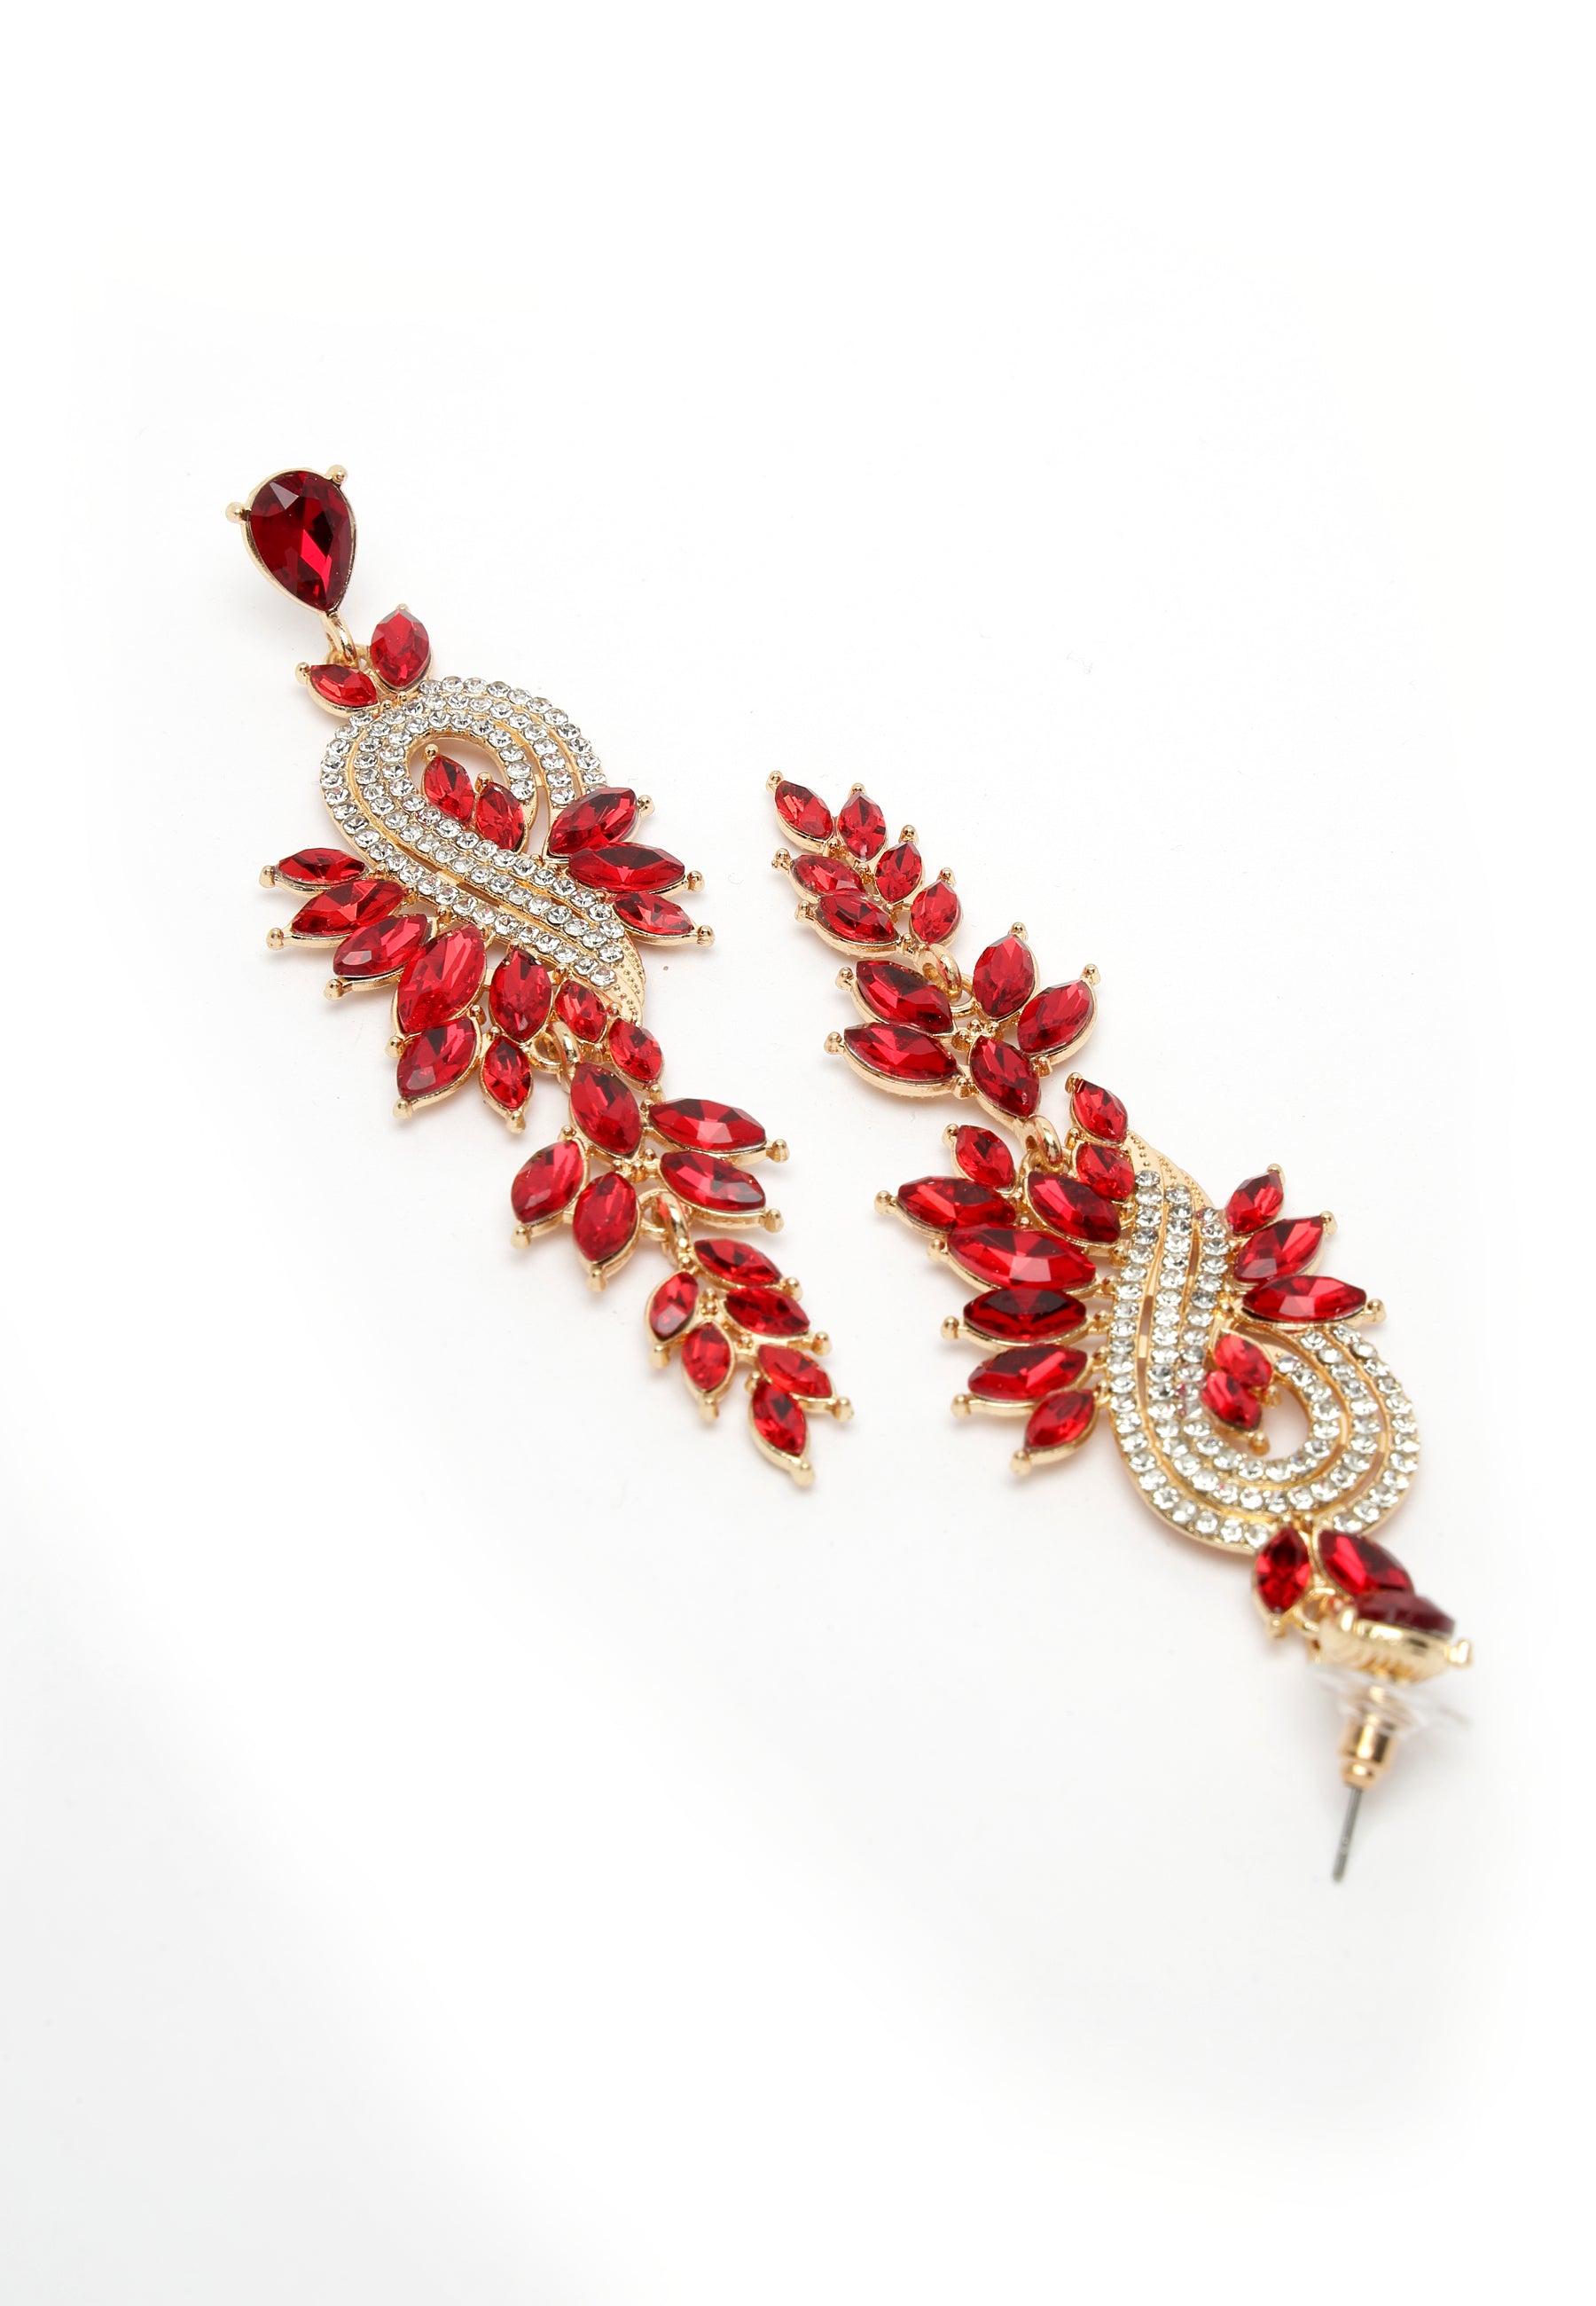 Beautiful Red Crystal Leaf Earrings